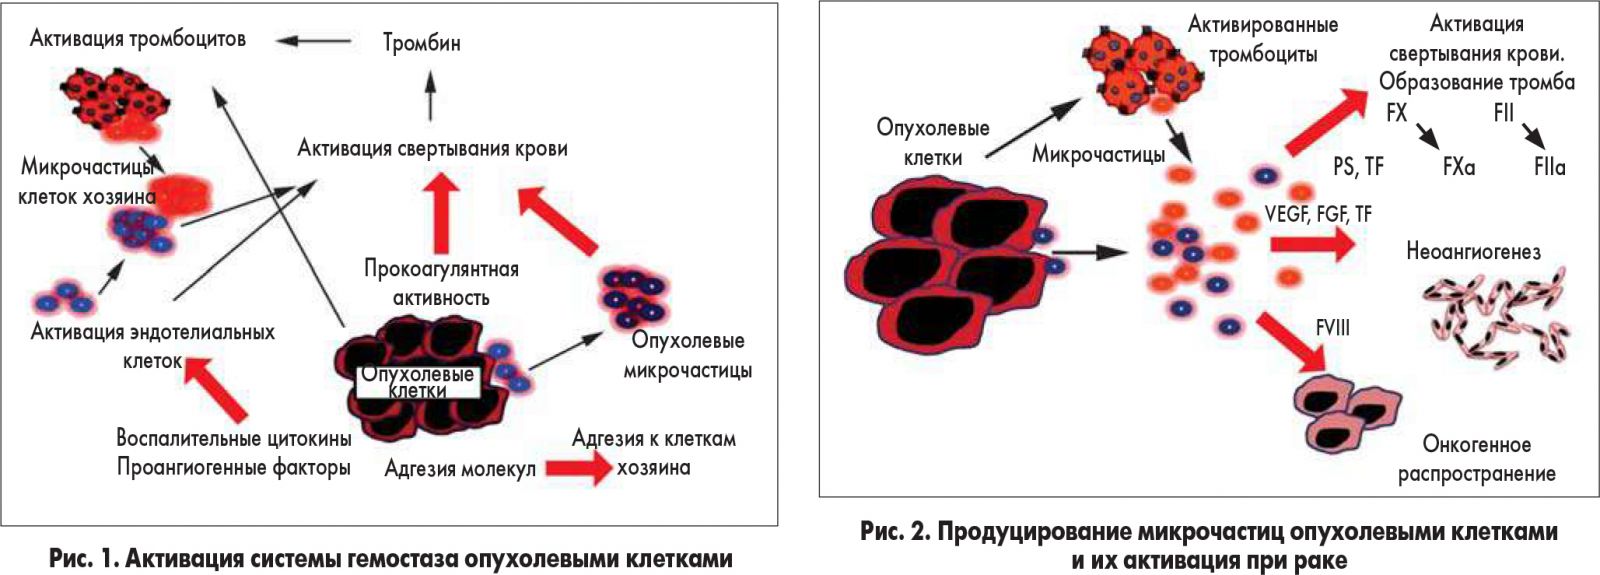 Тромбоциты при кровотечении. Рост опухолевых клеток. Фактор активации тромбоцитов. Активация тромбоцитов схема. Активация тромбоцитов (клеточный механизм).